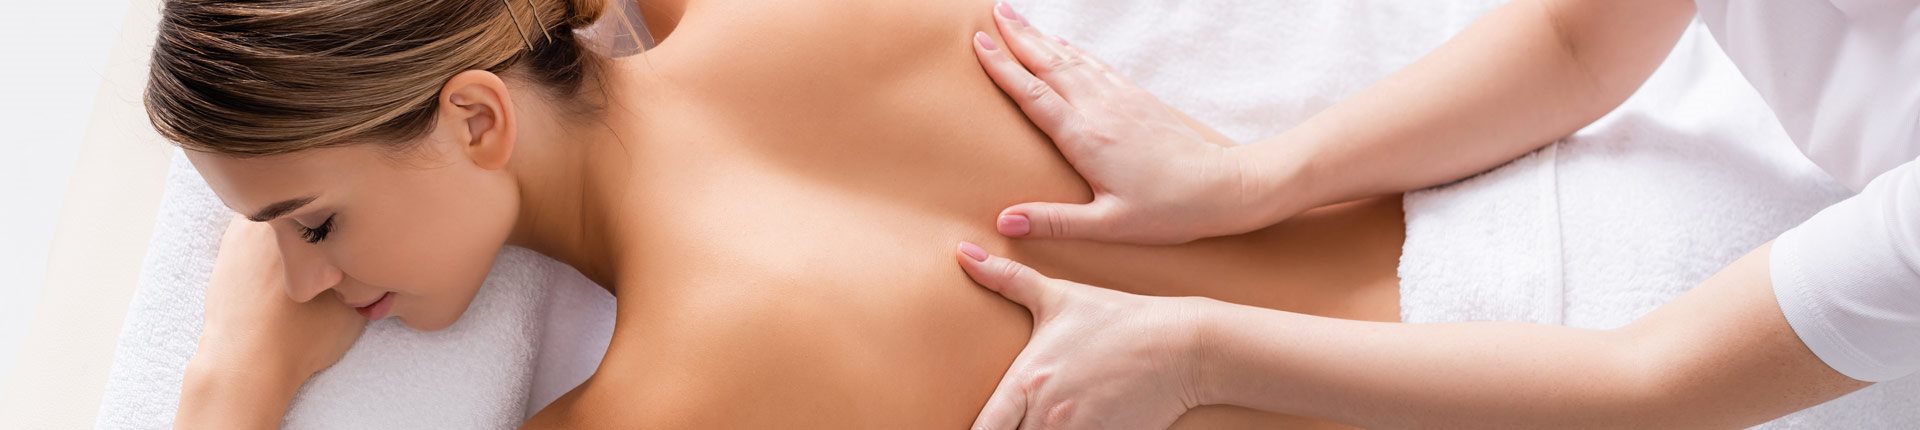 Czy masaże leczą? Jak masaż wpływa na ciało?